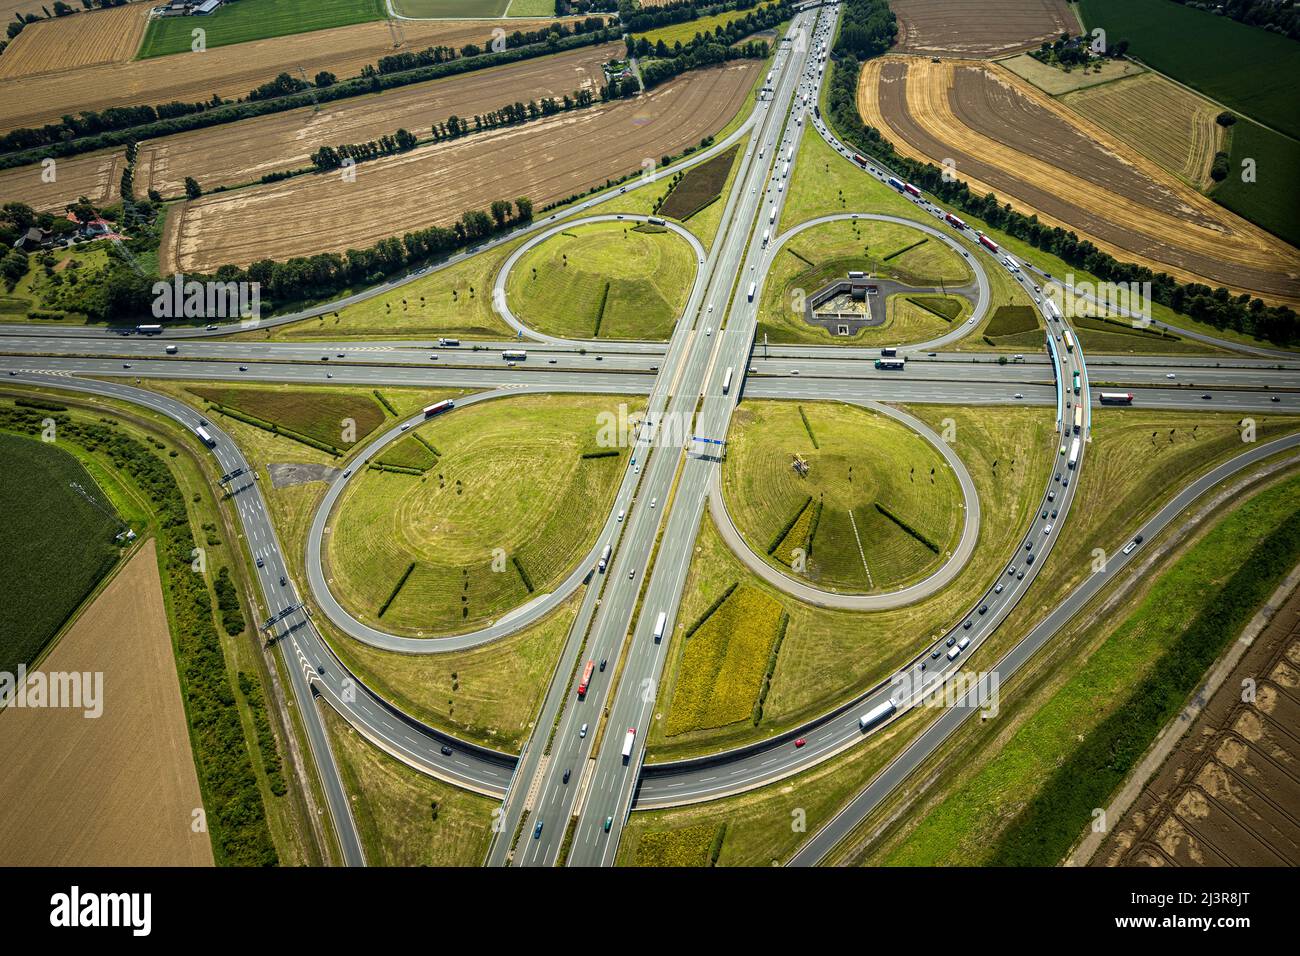 Vista aérea, intersección Kamener con la autopista A1 y la autopista A2, escultura de helicóptero Ángel Amarillo en círculo interior, Kamen, zona de Ruhr, Rin Norte-W Foto de stock